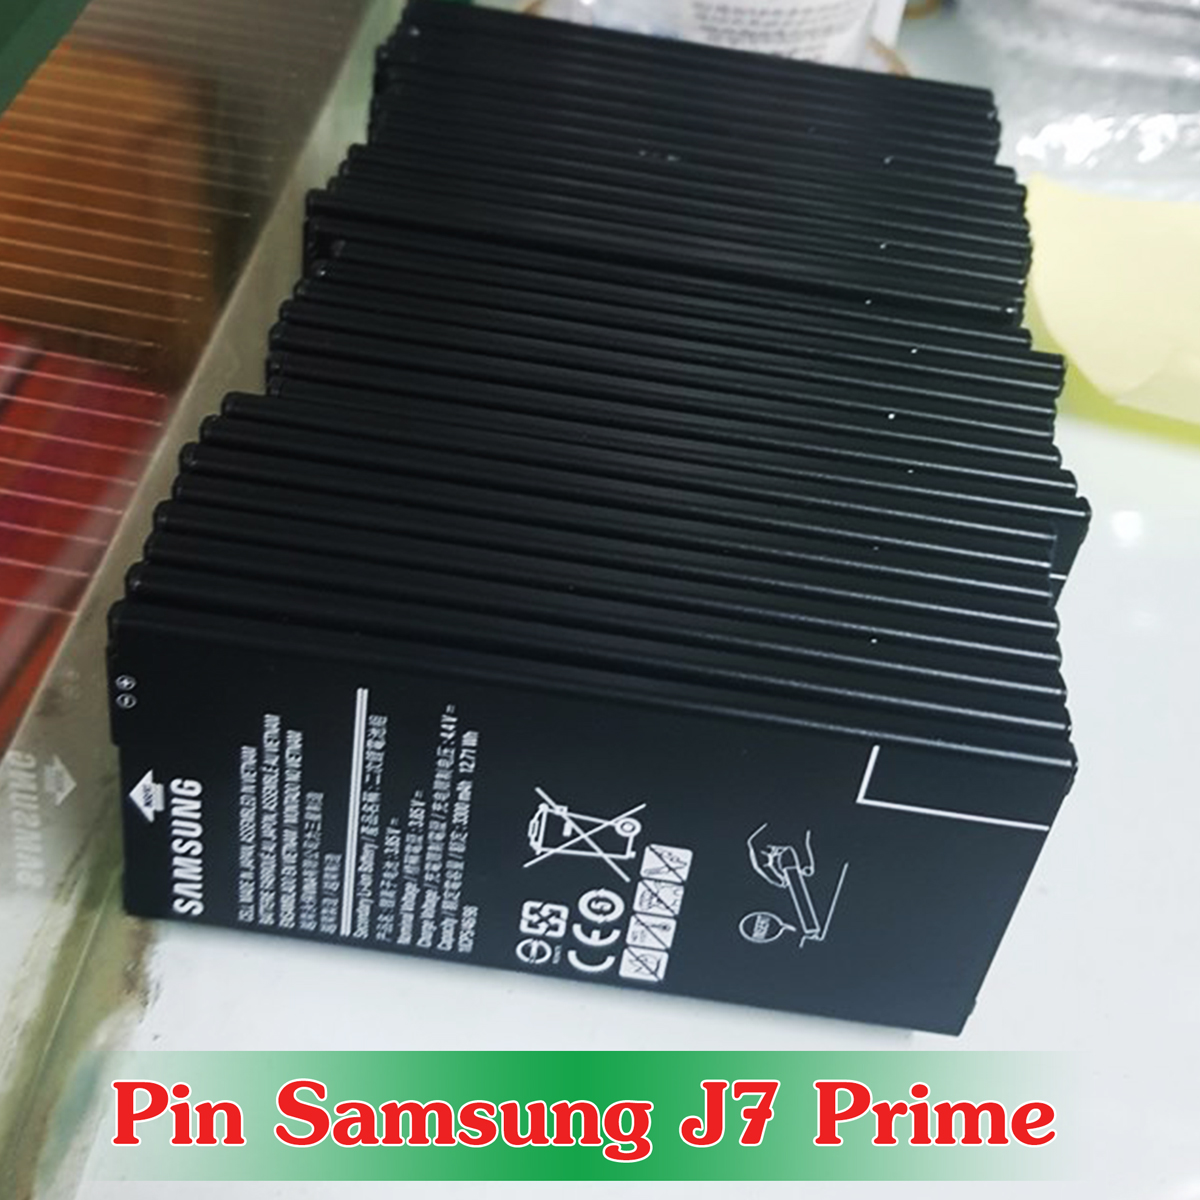 Pin Samsung J7 Prime